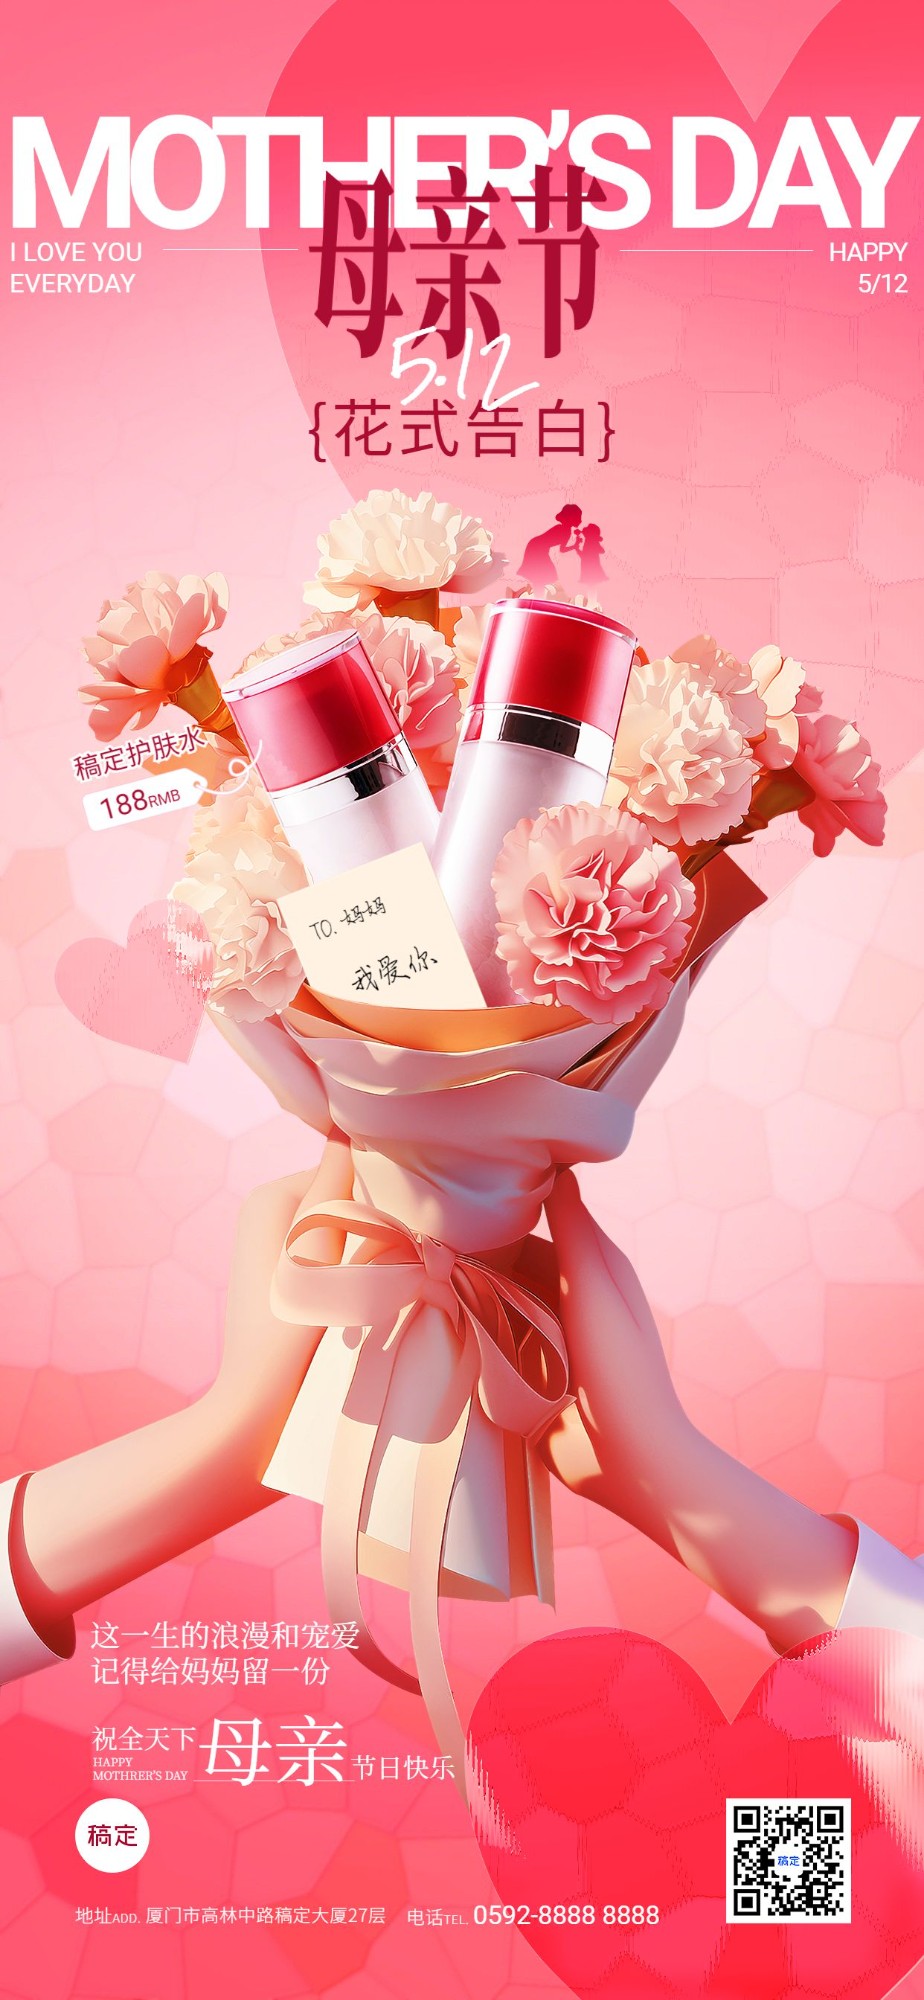 母亲节节日祝福美容美妆商品零售营销卖货产品展示创意花束AIGC